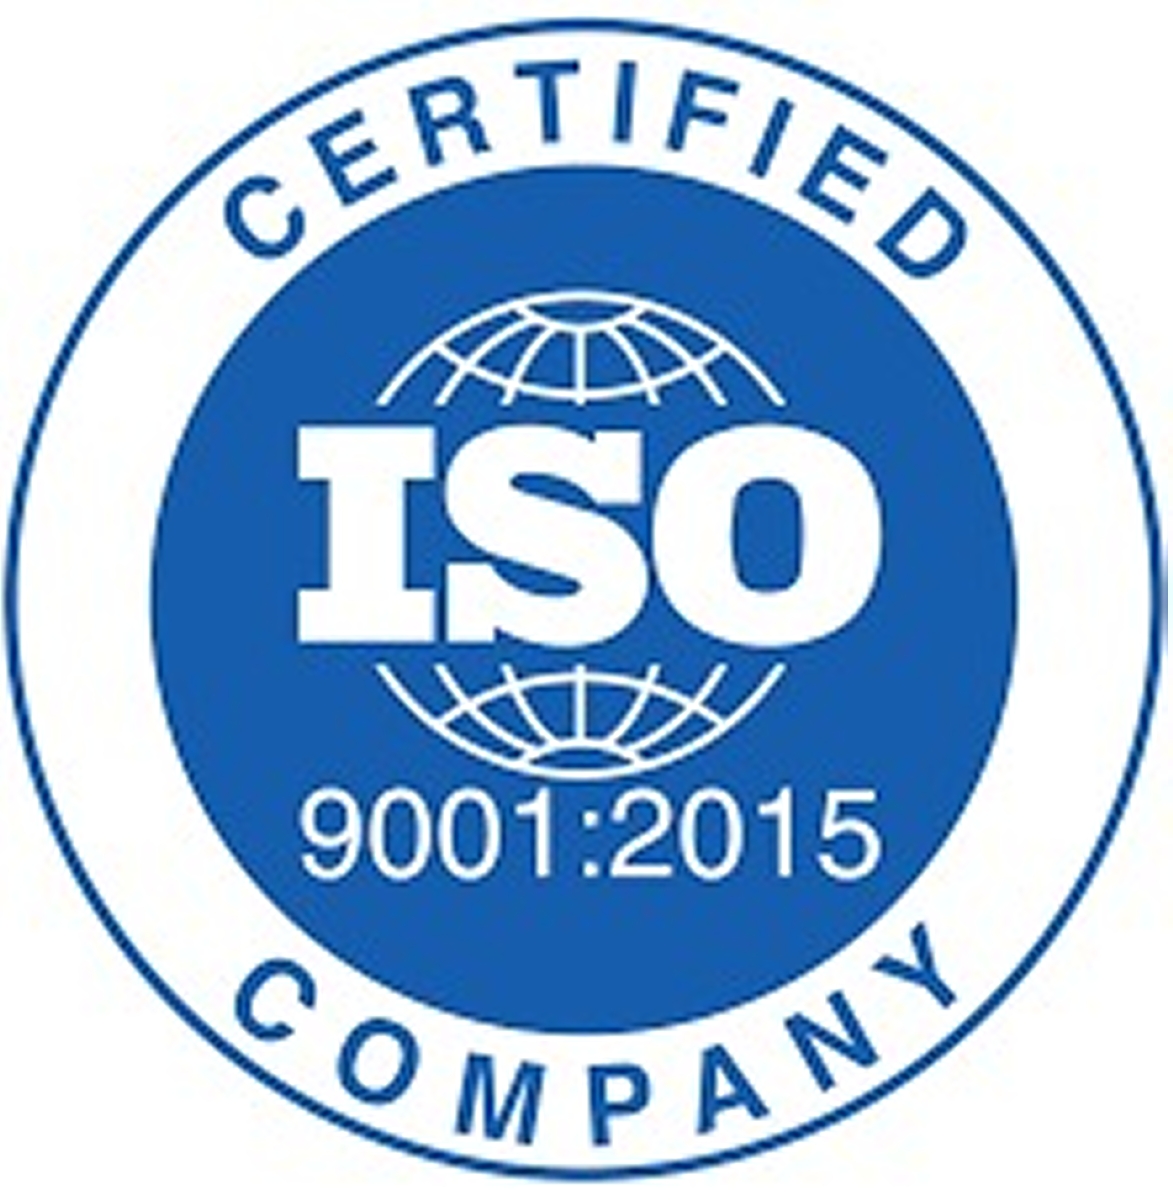 MULTIAX ottiene la certificazione ISO 9001:2015